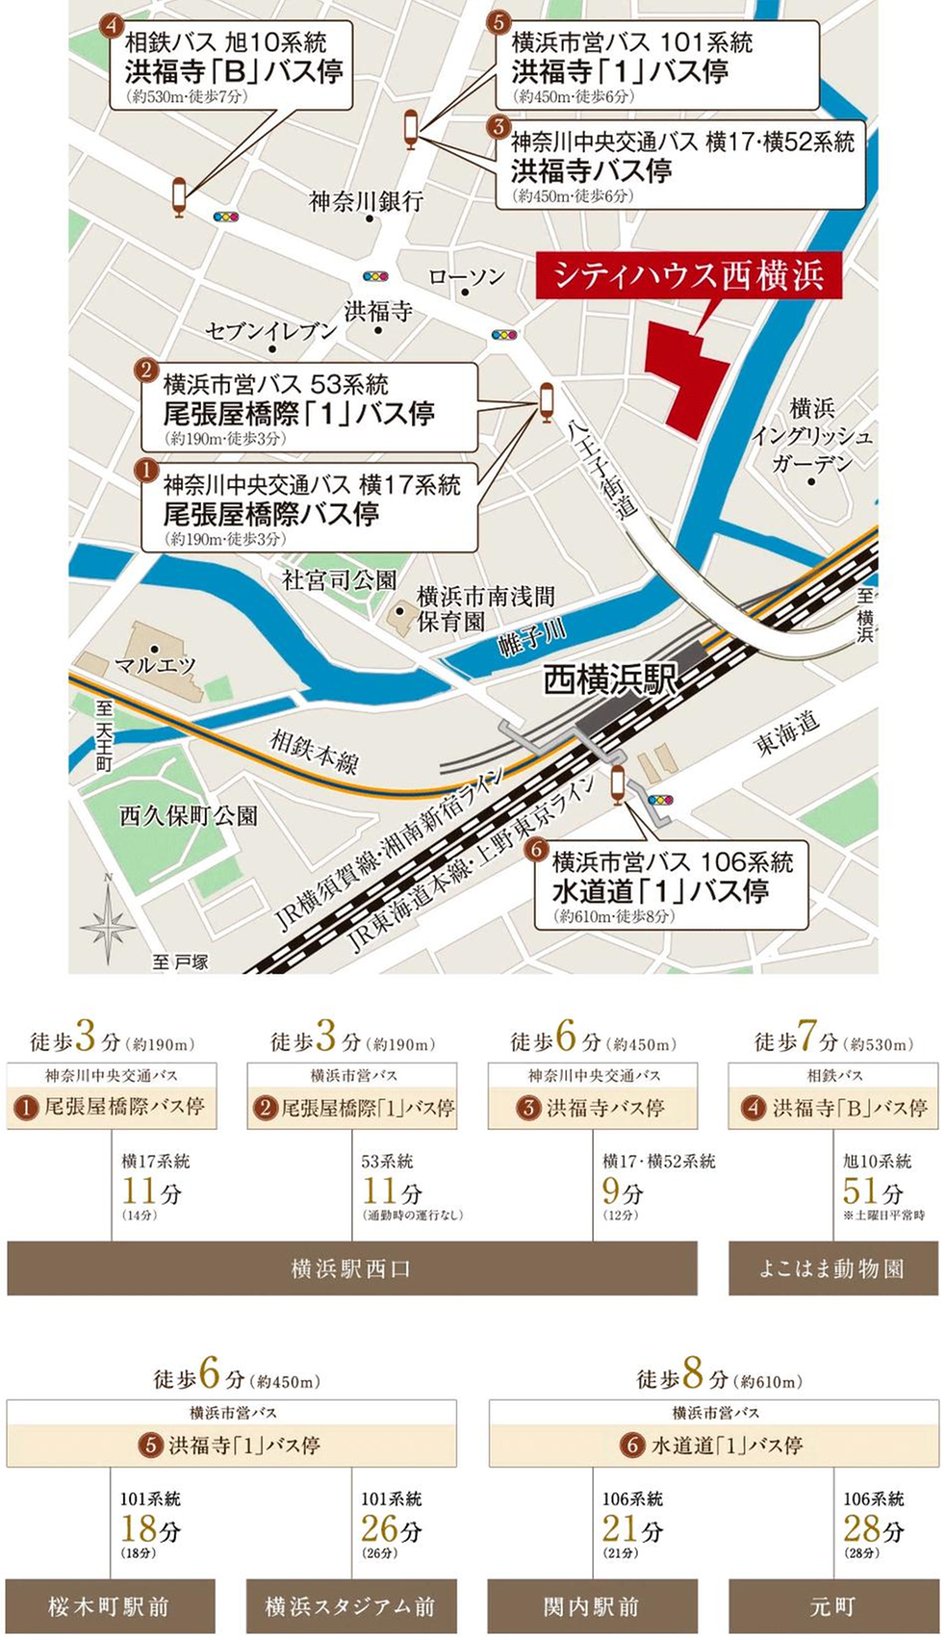 シティハウス西横浜の交通アクセス図